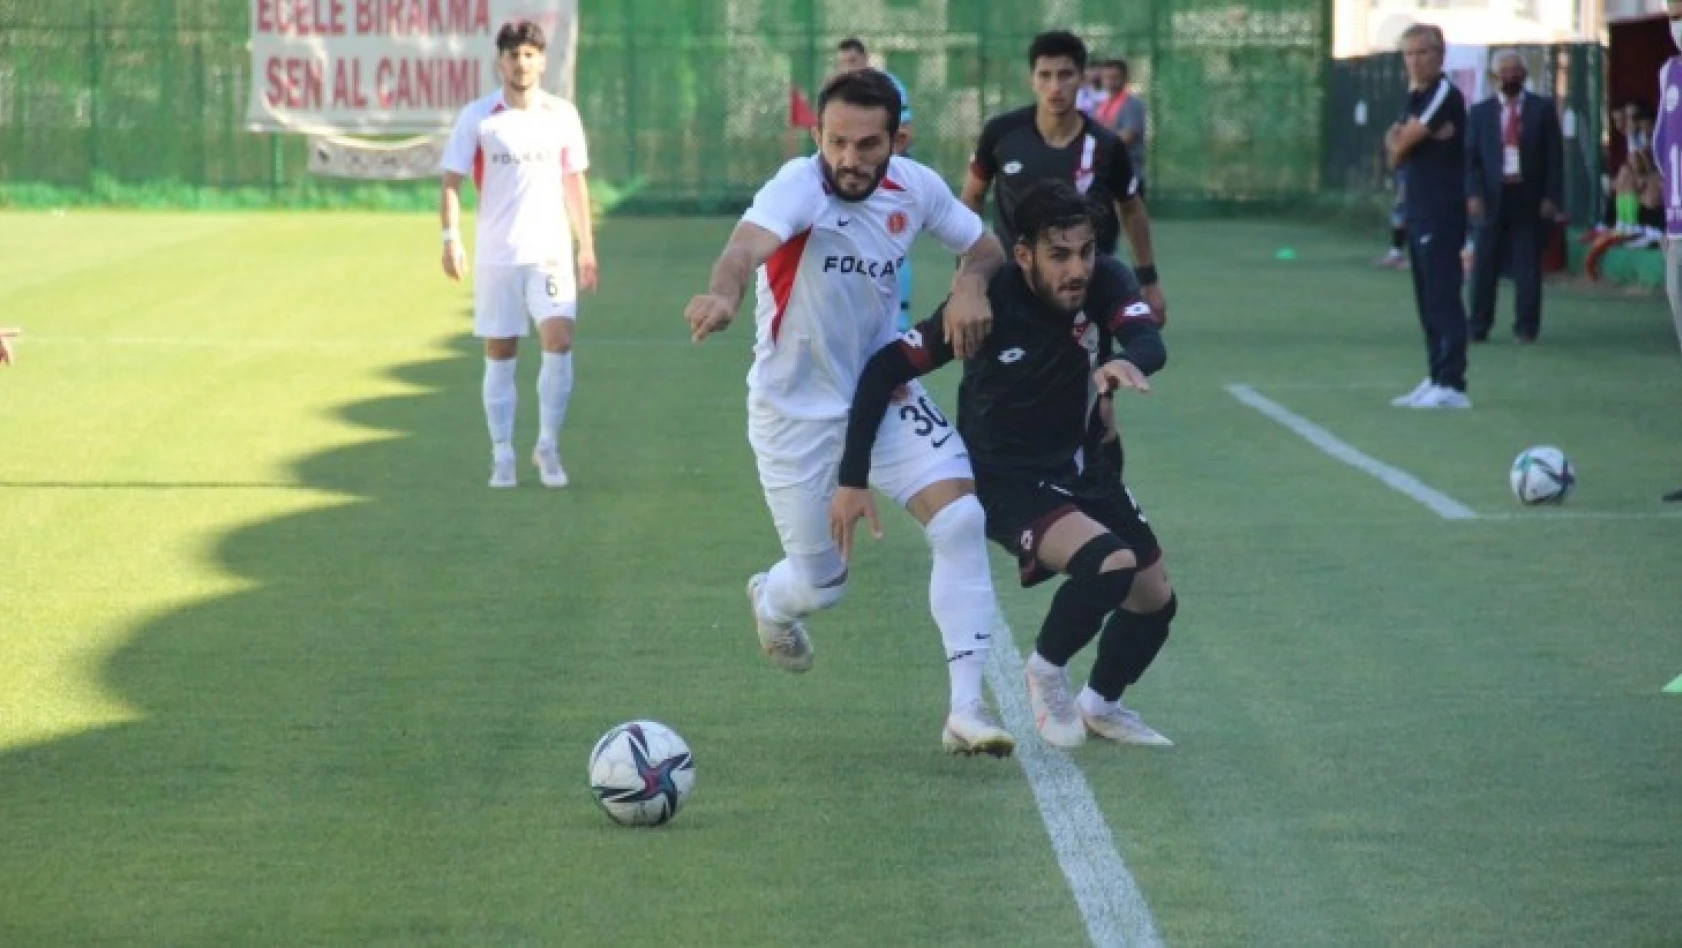 TFF 3. Lig: Elazığspor: 1 - Bergama Belediyespor: 2